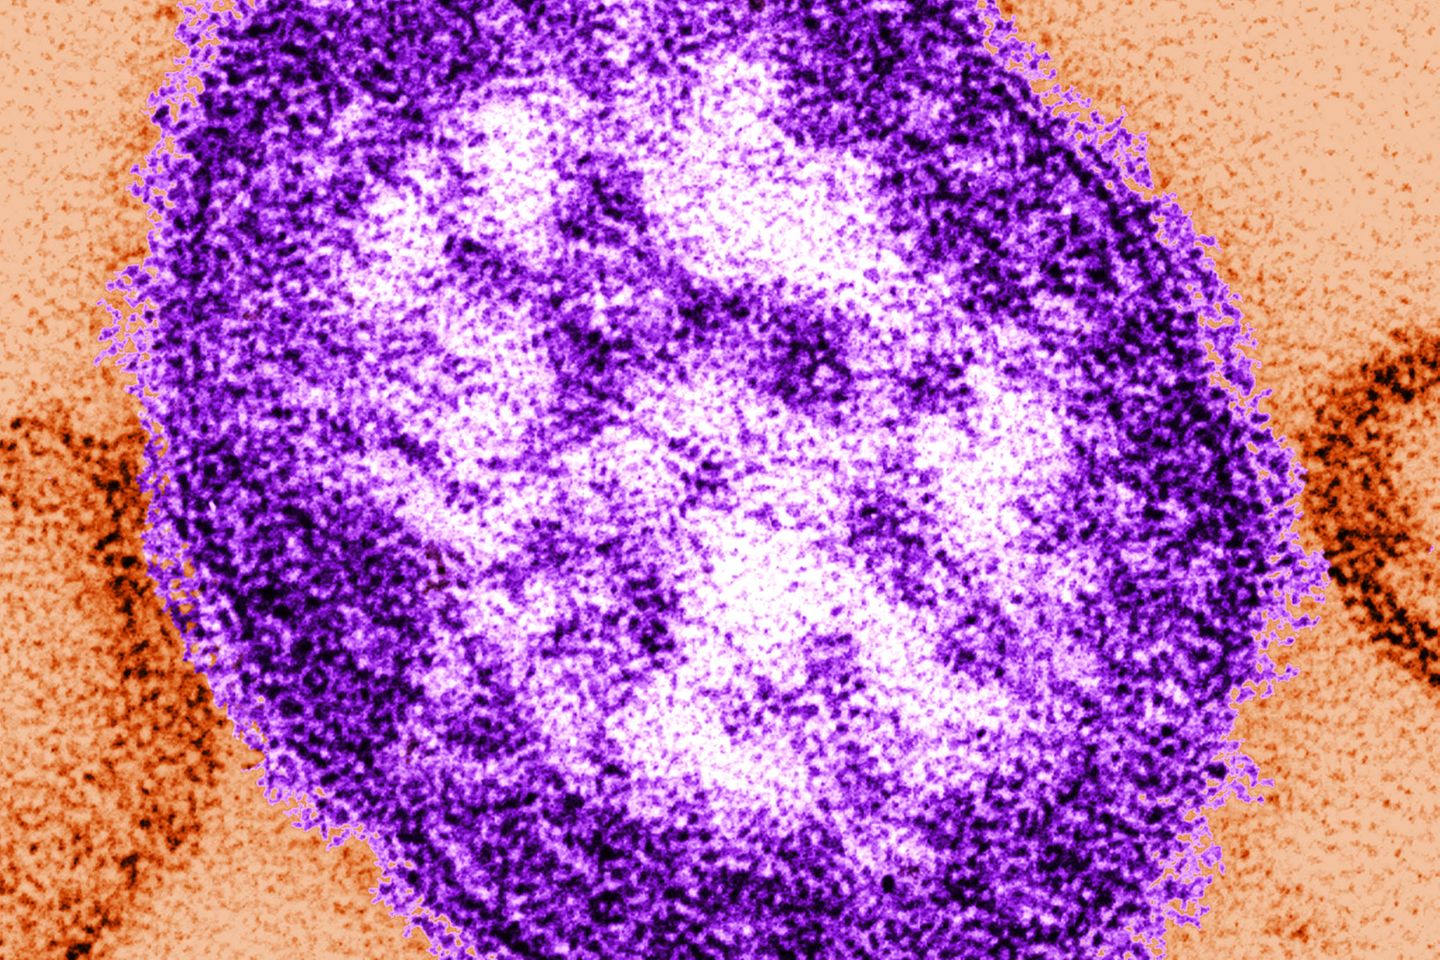 Masernvirus unter dem Transmissionselektronenmikroskop: Die Masern-Fälle weltweit steigen sehr rasch. Die Weltgesundheitsorganisation (WHO) sieht deshalb Millionen Kinder in Gefahr